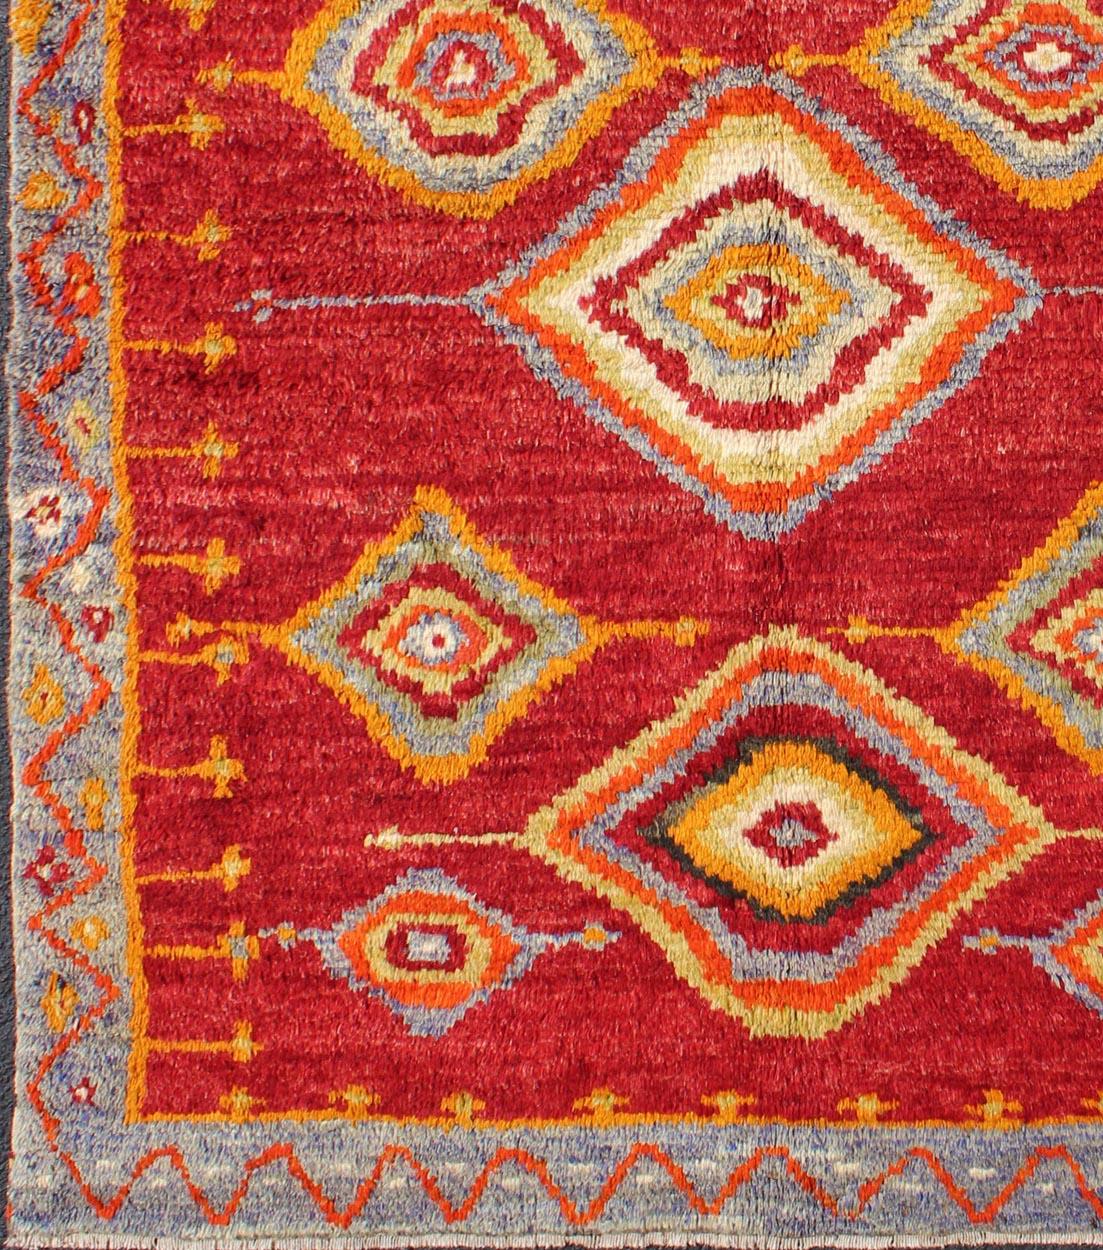 Türkischer Konya-Stammesteppich mit Rautenmuster auf schönem königlichen roten Hintergrund.
Dieser brillante Tribal-Konya-Teppich zeigt ein mehrschichtiges Rautenmuster mit einer Reihe von Grün-, Orange-, Gelb- und Blautönen, die in dem leuchtend